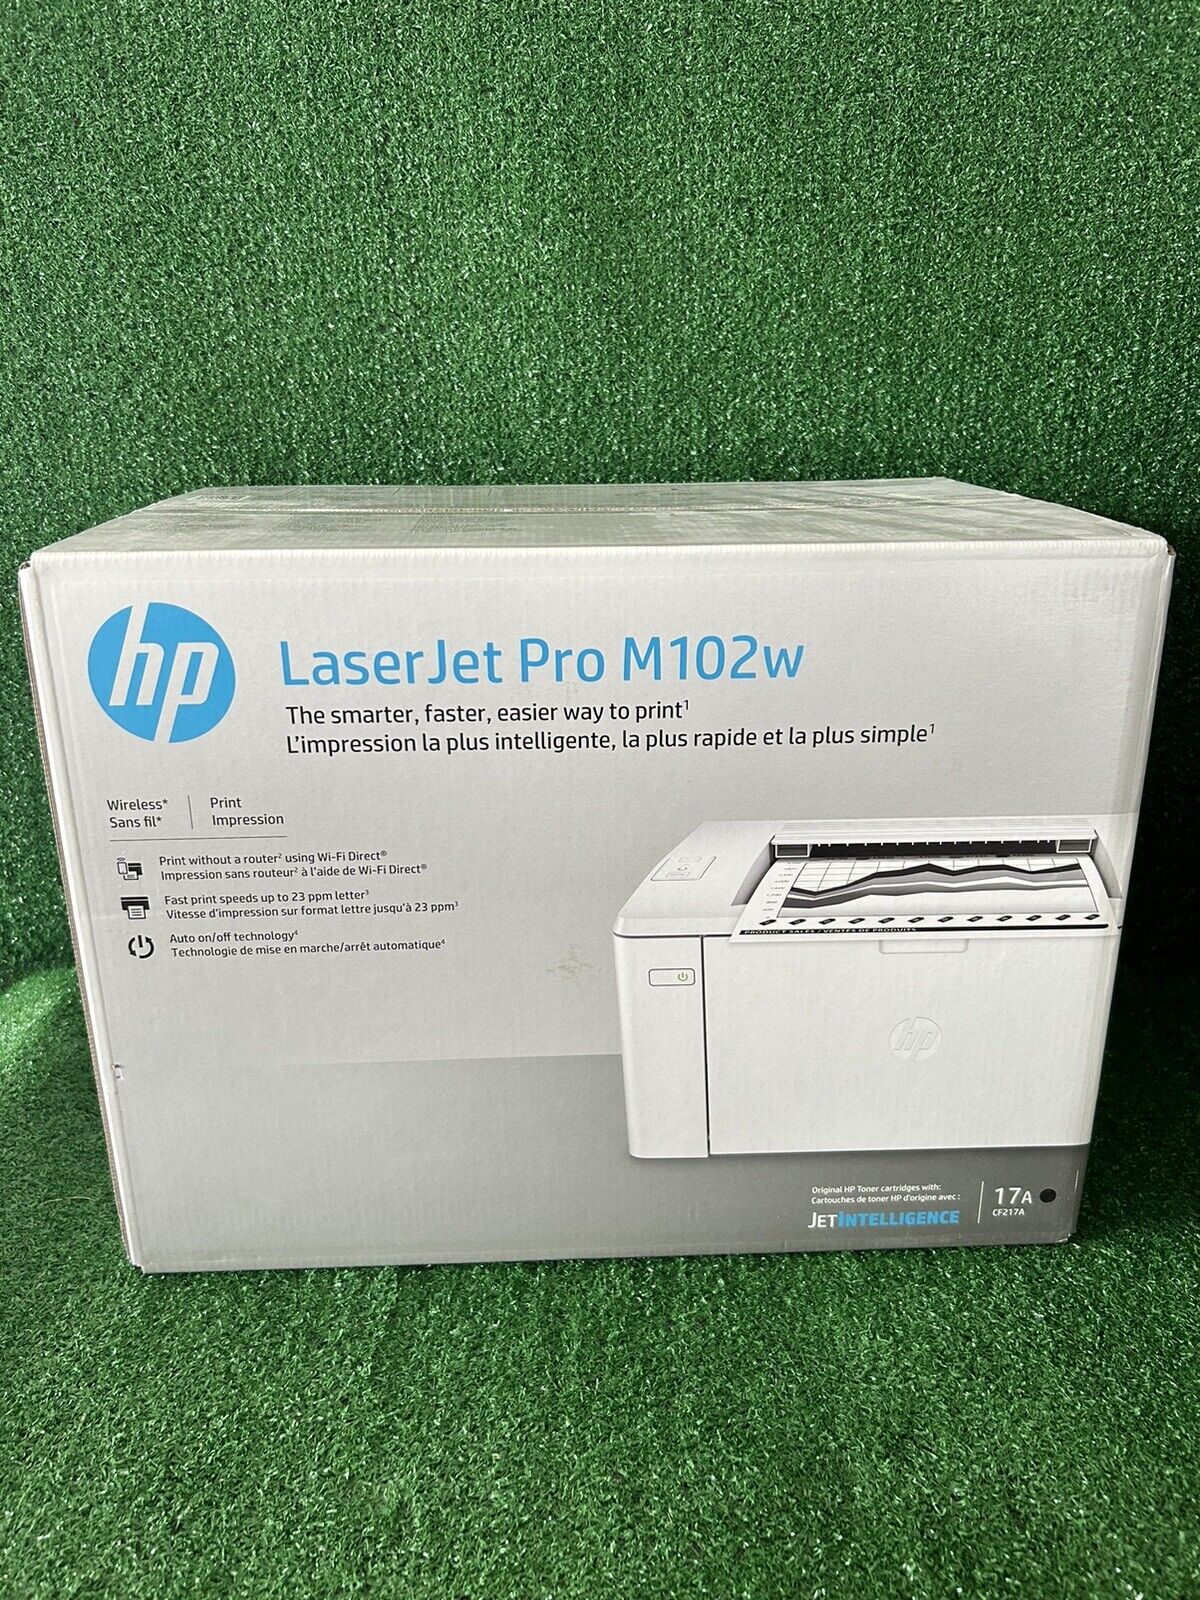 NEW Sealed Retail HP LaserJet Pro M102w Wireless Monochrome Printer (G3Q35A)